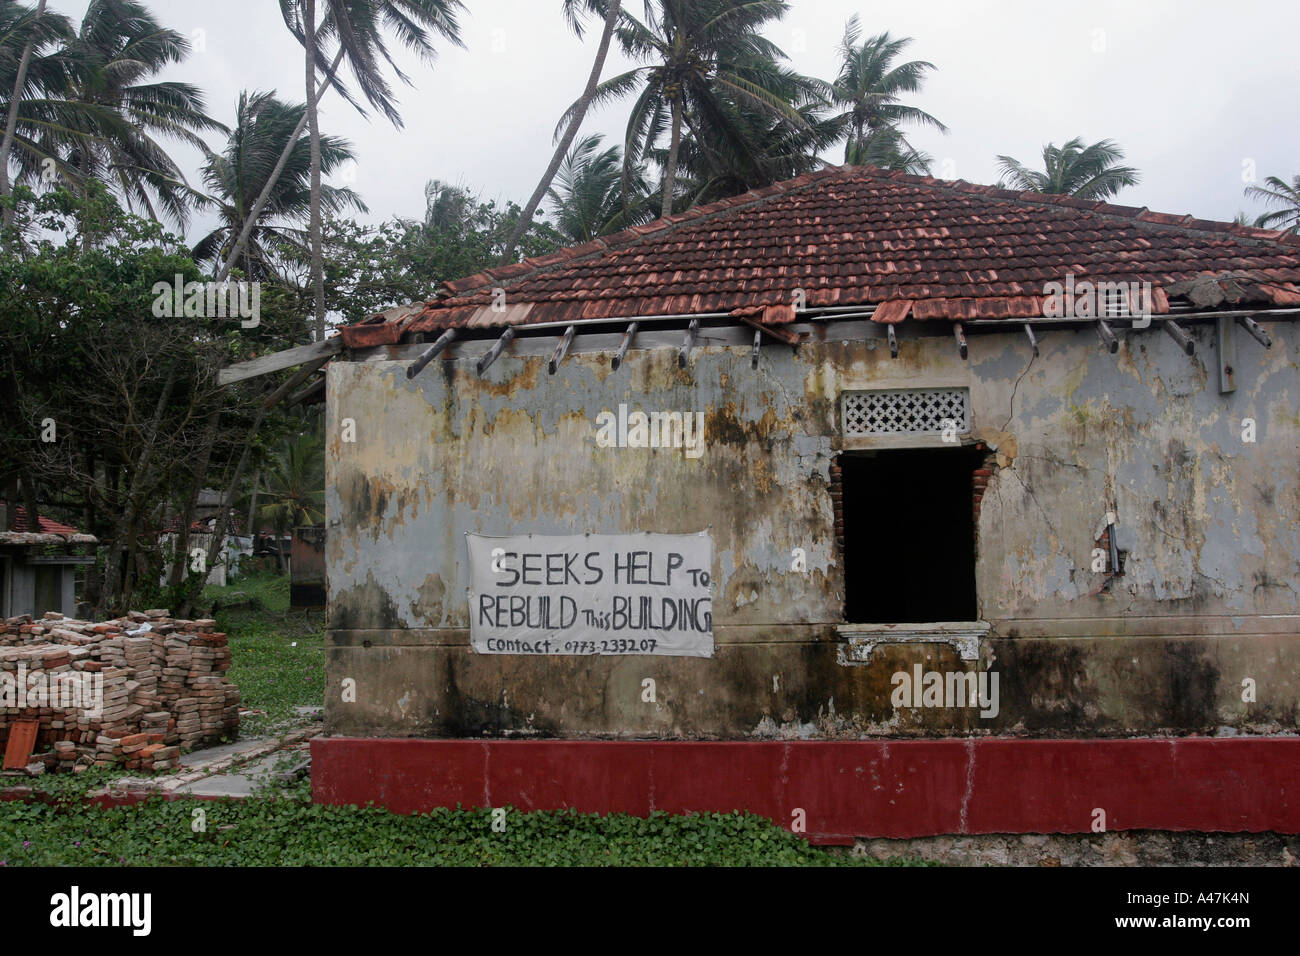 Les propriétaires d'une maison endommagée ont placé une affiche pour demander de l'aide à la reconstruction de leur maison au Sri Lanka Banque D'Images